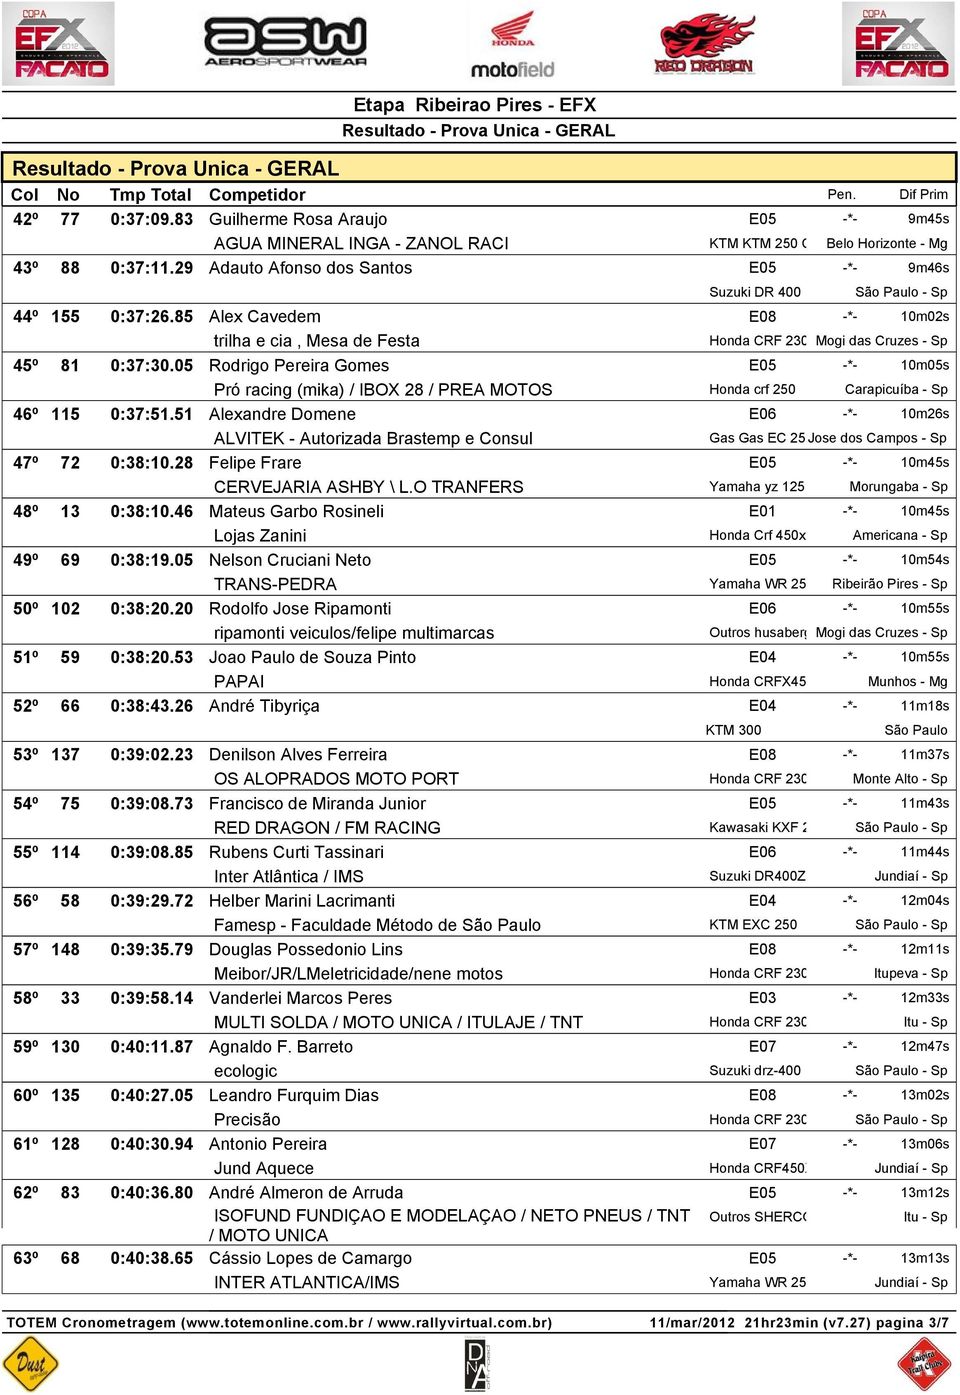 05 Rodrigo Pereira Gomes E05 -*- 10m05s Pró racing (mika) / IBOX 28 / PREA MOTOS Honda crf 250 Carapicuíba - Sp 46º 115 0:37:51.